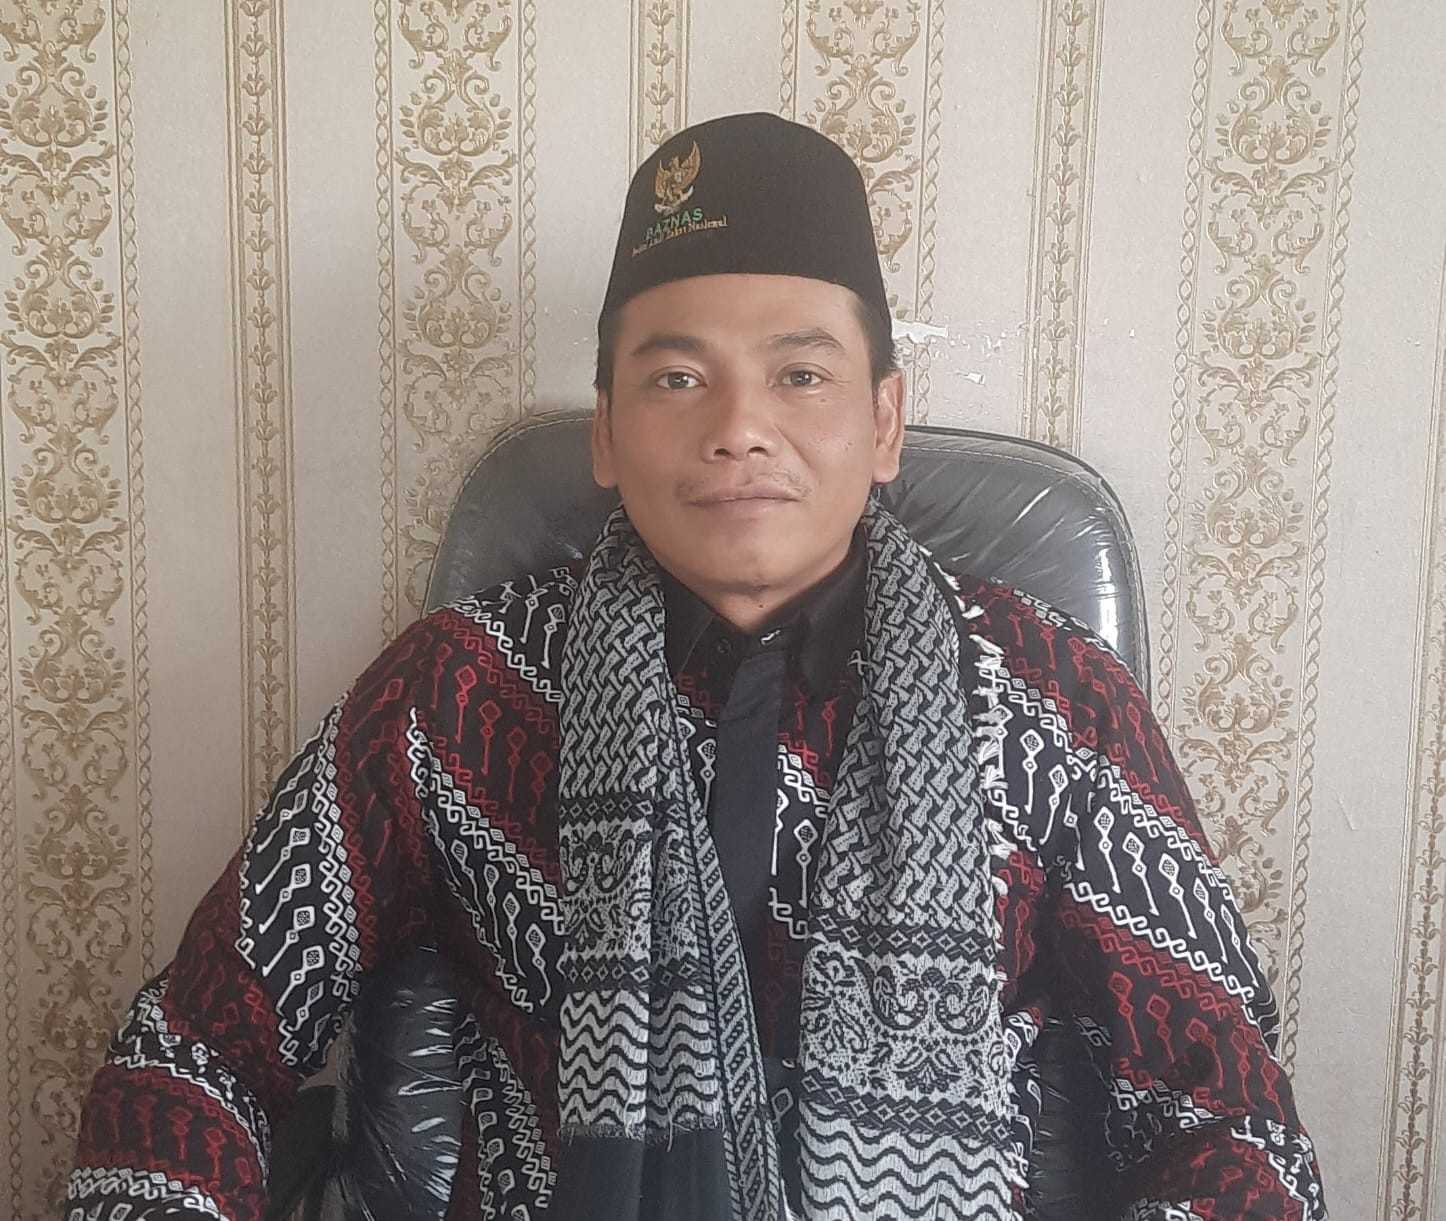 BAZNAS Lampung Barat Galang Dana untuk Palestina Sesuai Fatwa MUI dan Himbauan Ketua BAZNAS RI